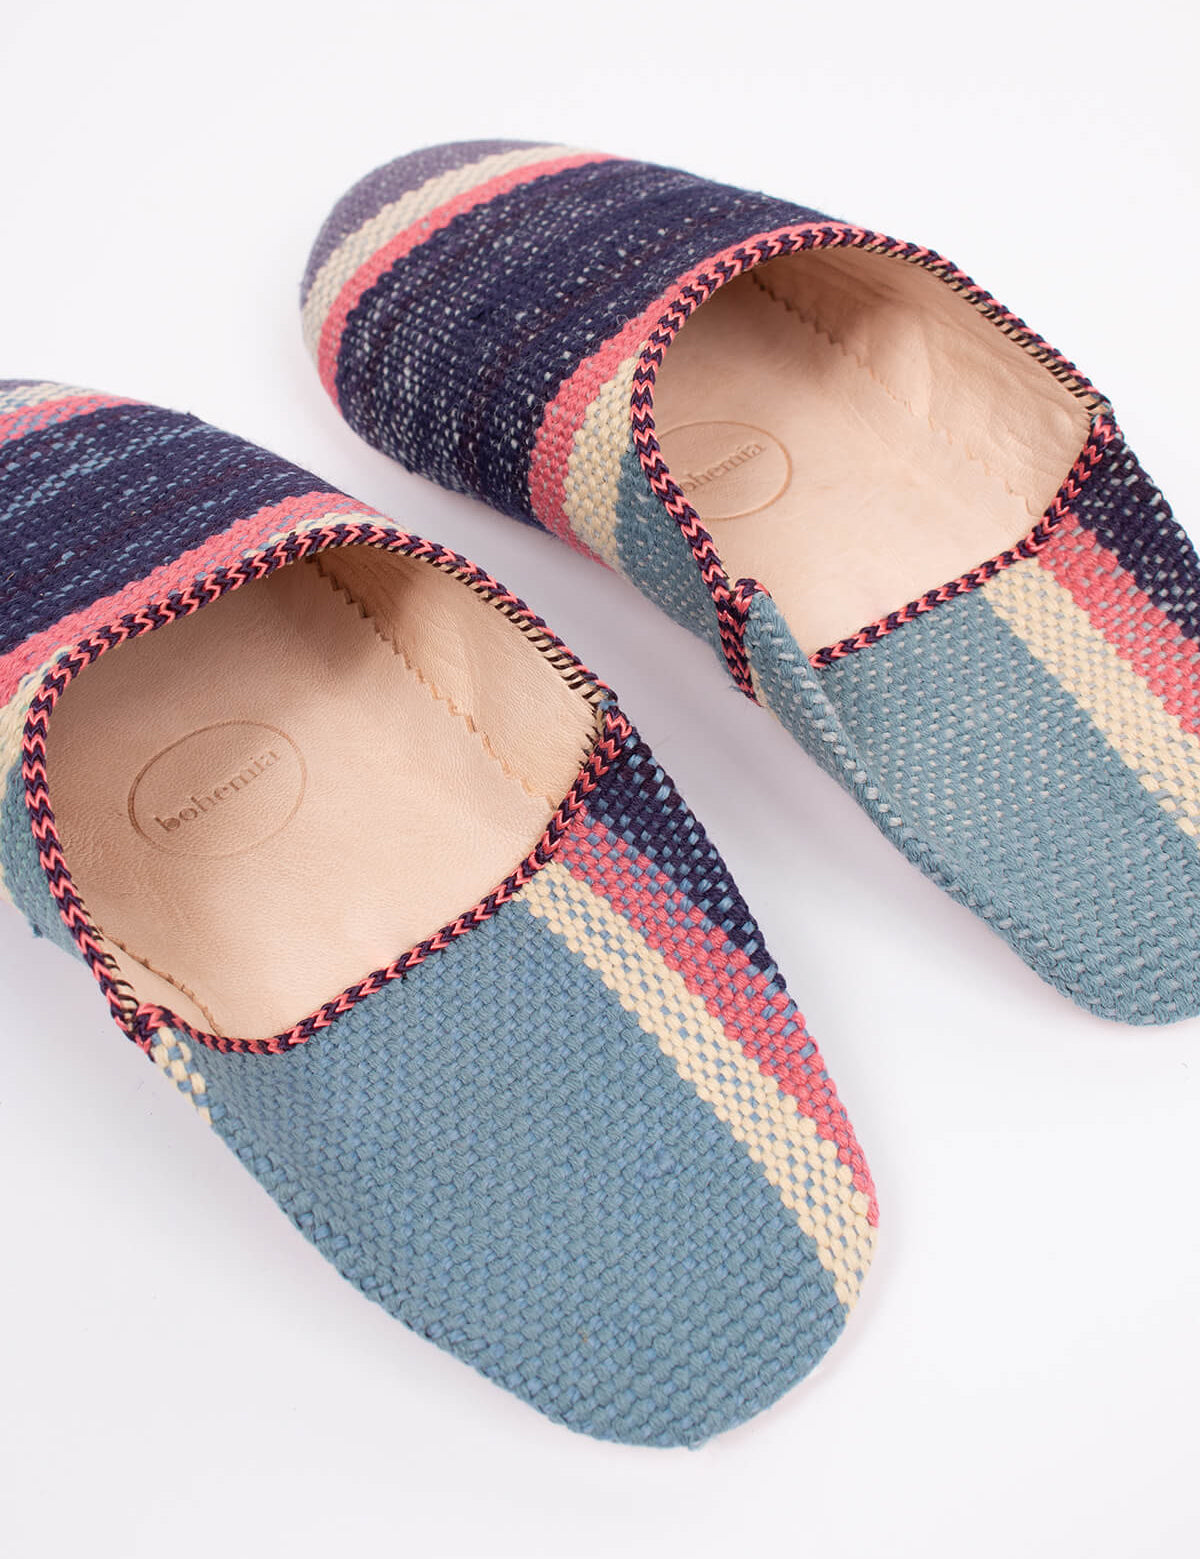 Bohemia-design-babouche-boujad-slippers-nordic-stripe_53c359e7-e5e5-4a42-9a08-a60f363a57d5.jpg